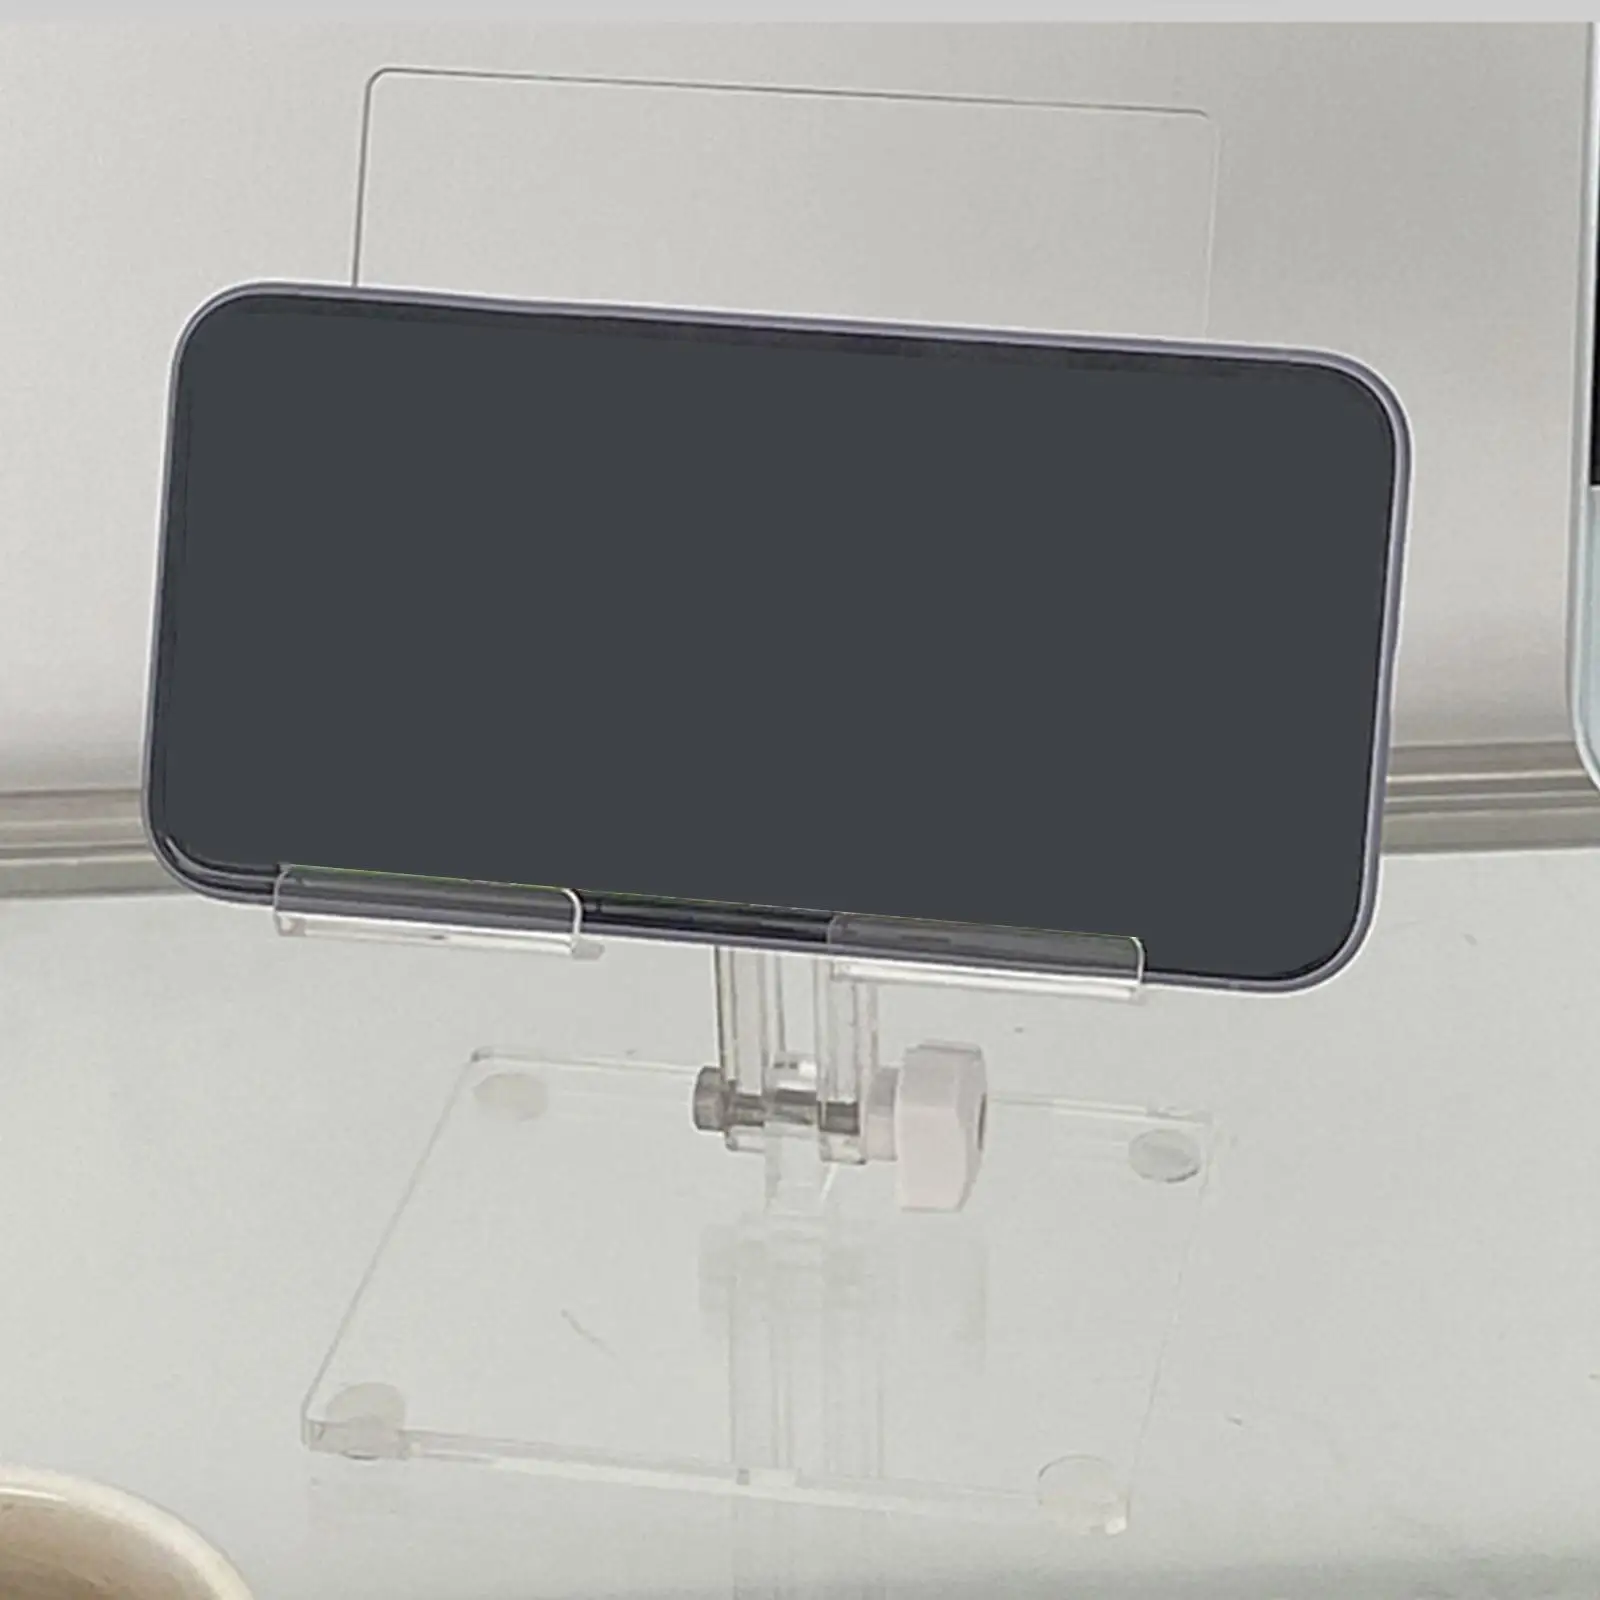 Tablet Stand for Desk Portable Universal Lightweight Phone Tablet Holder for Bedside